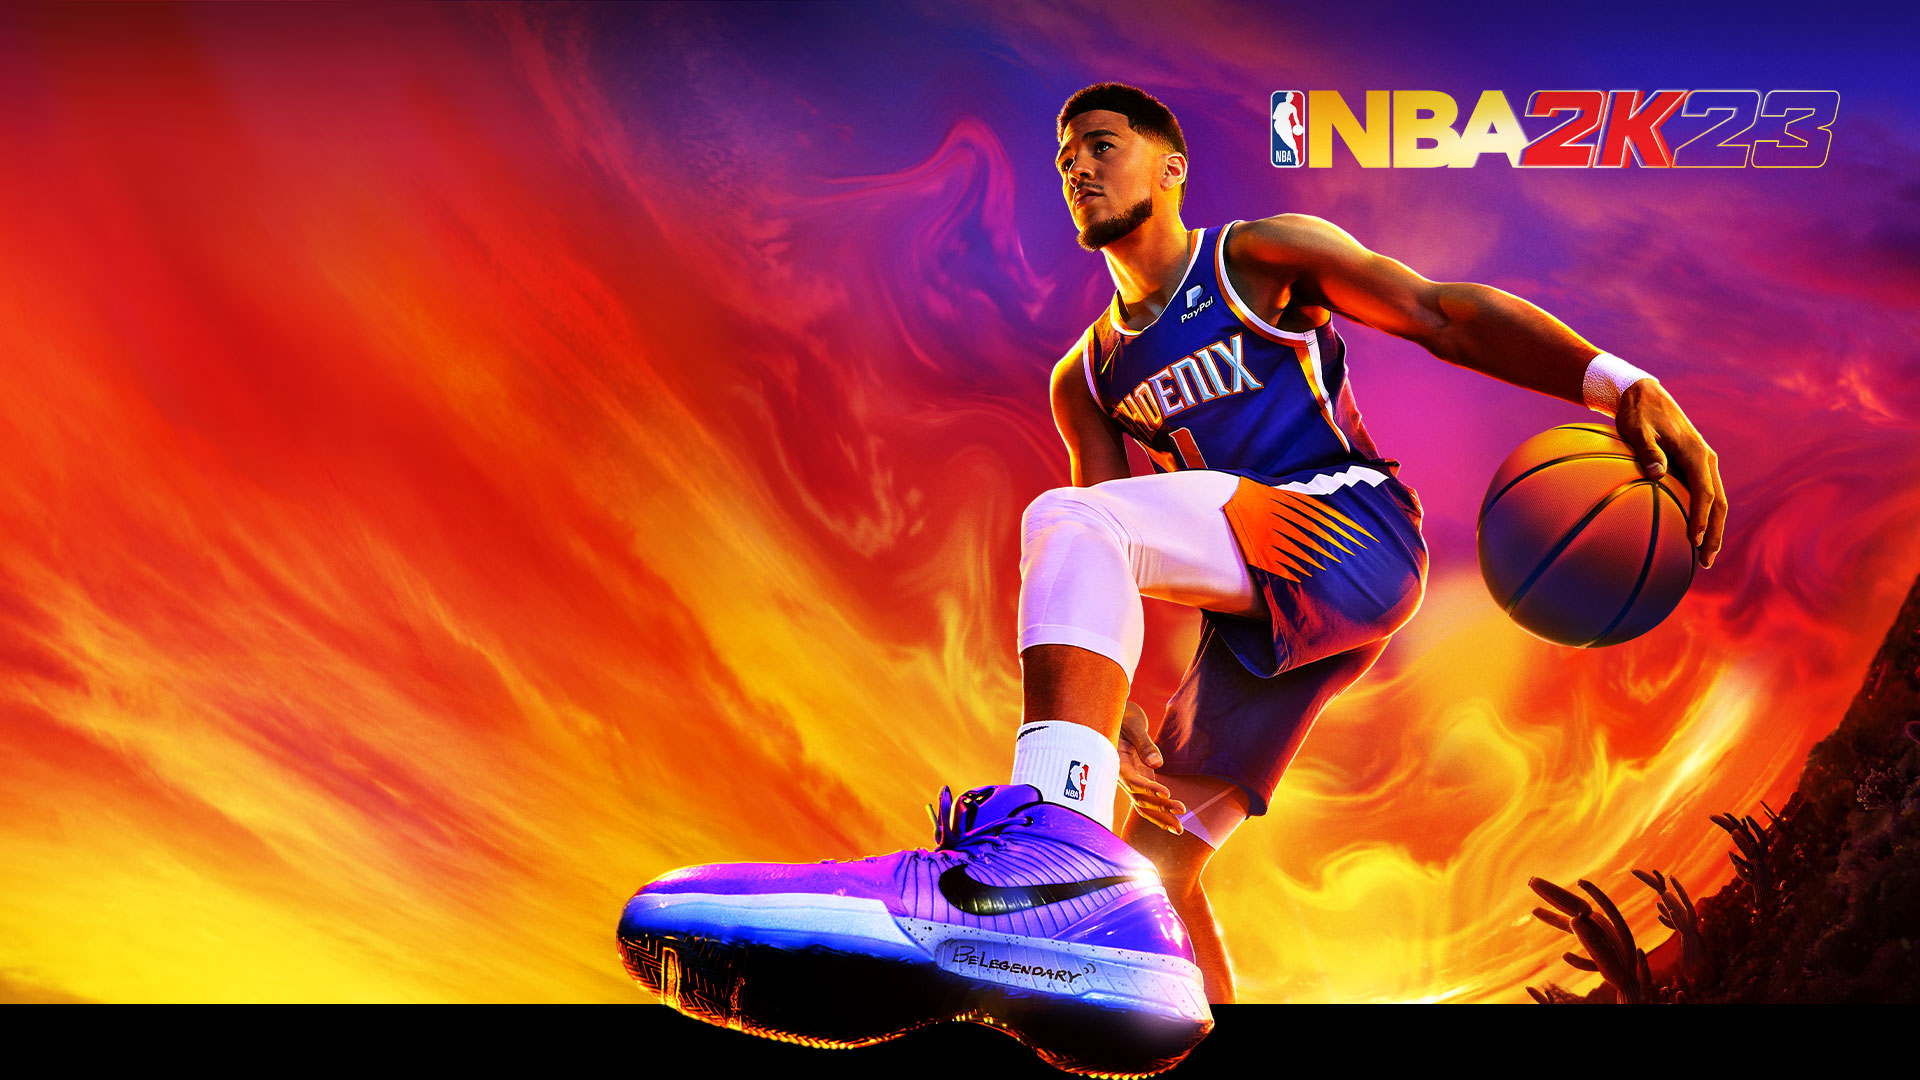 NBA 2K23, Devin Booker, die Nummer 1 der Phoenix Suns, dribbelt einen Basketball unter einem bunten Wüstenhimmel.